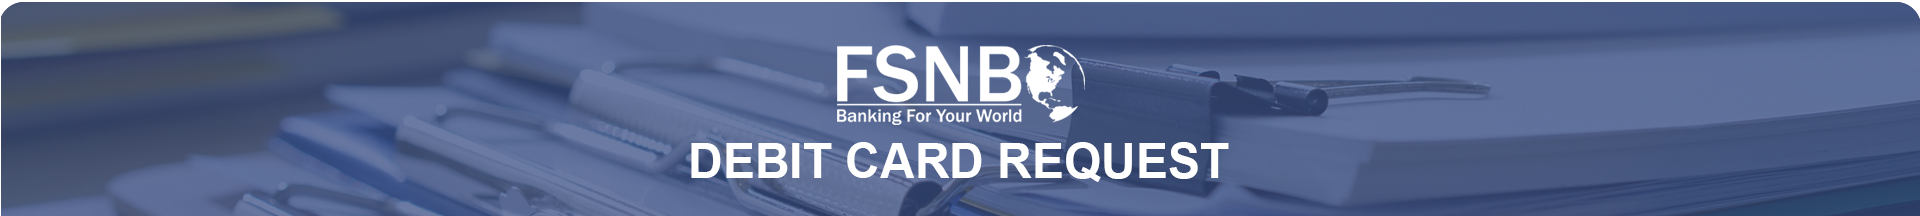 FSNB debit card request